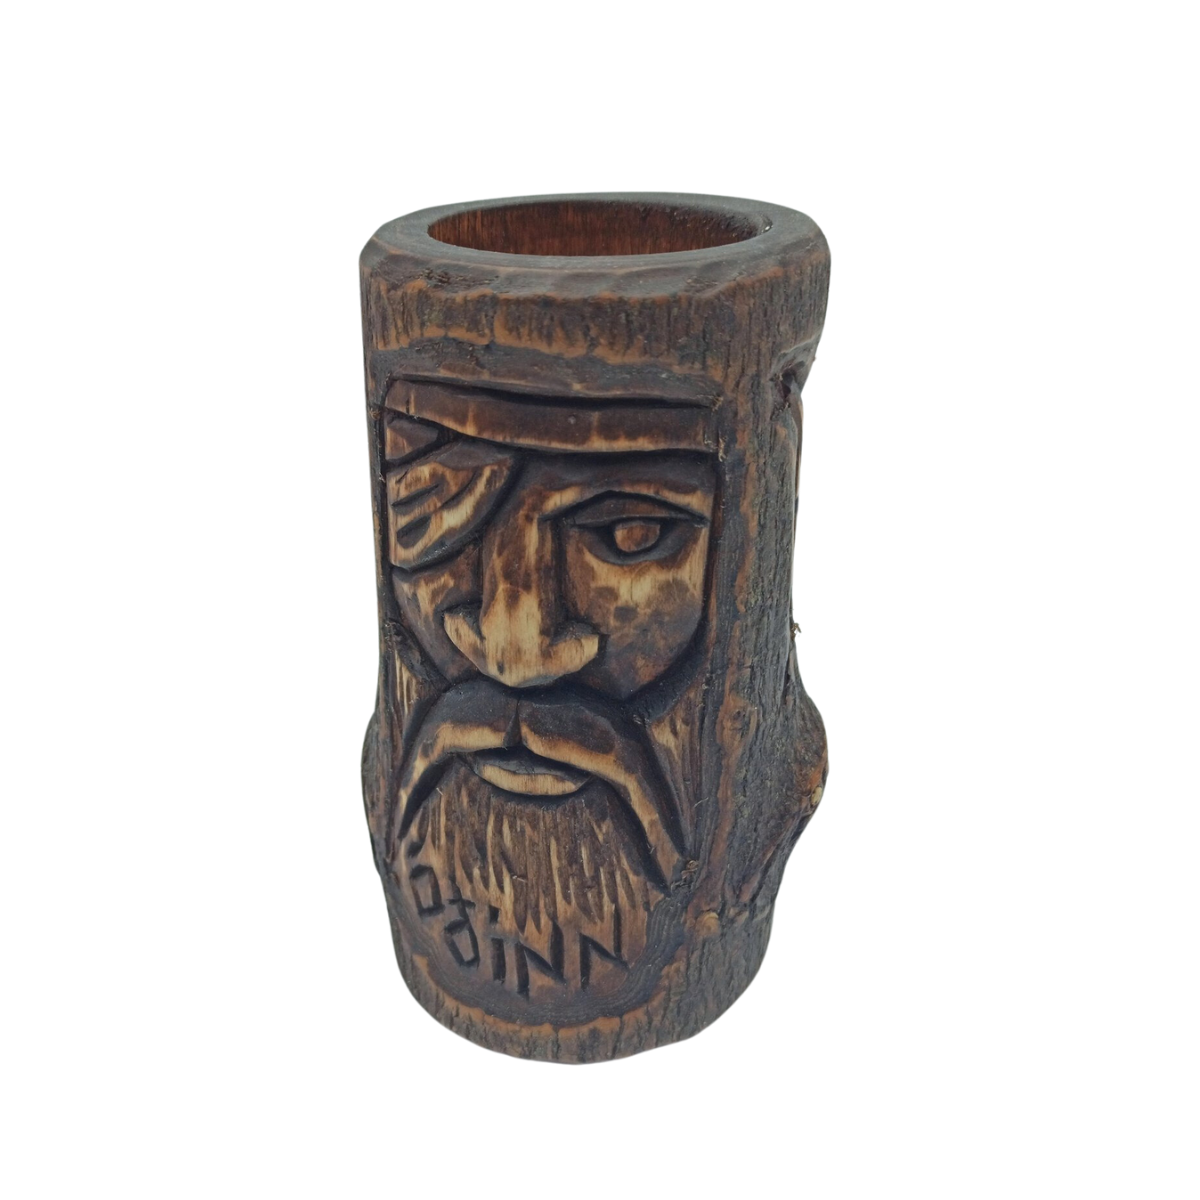 Odin wooden statue - altar candle holder   